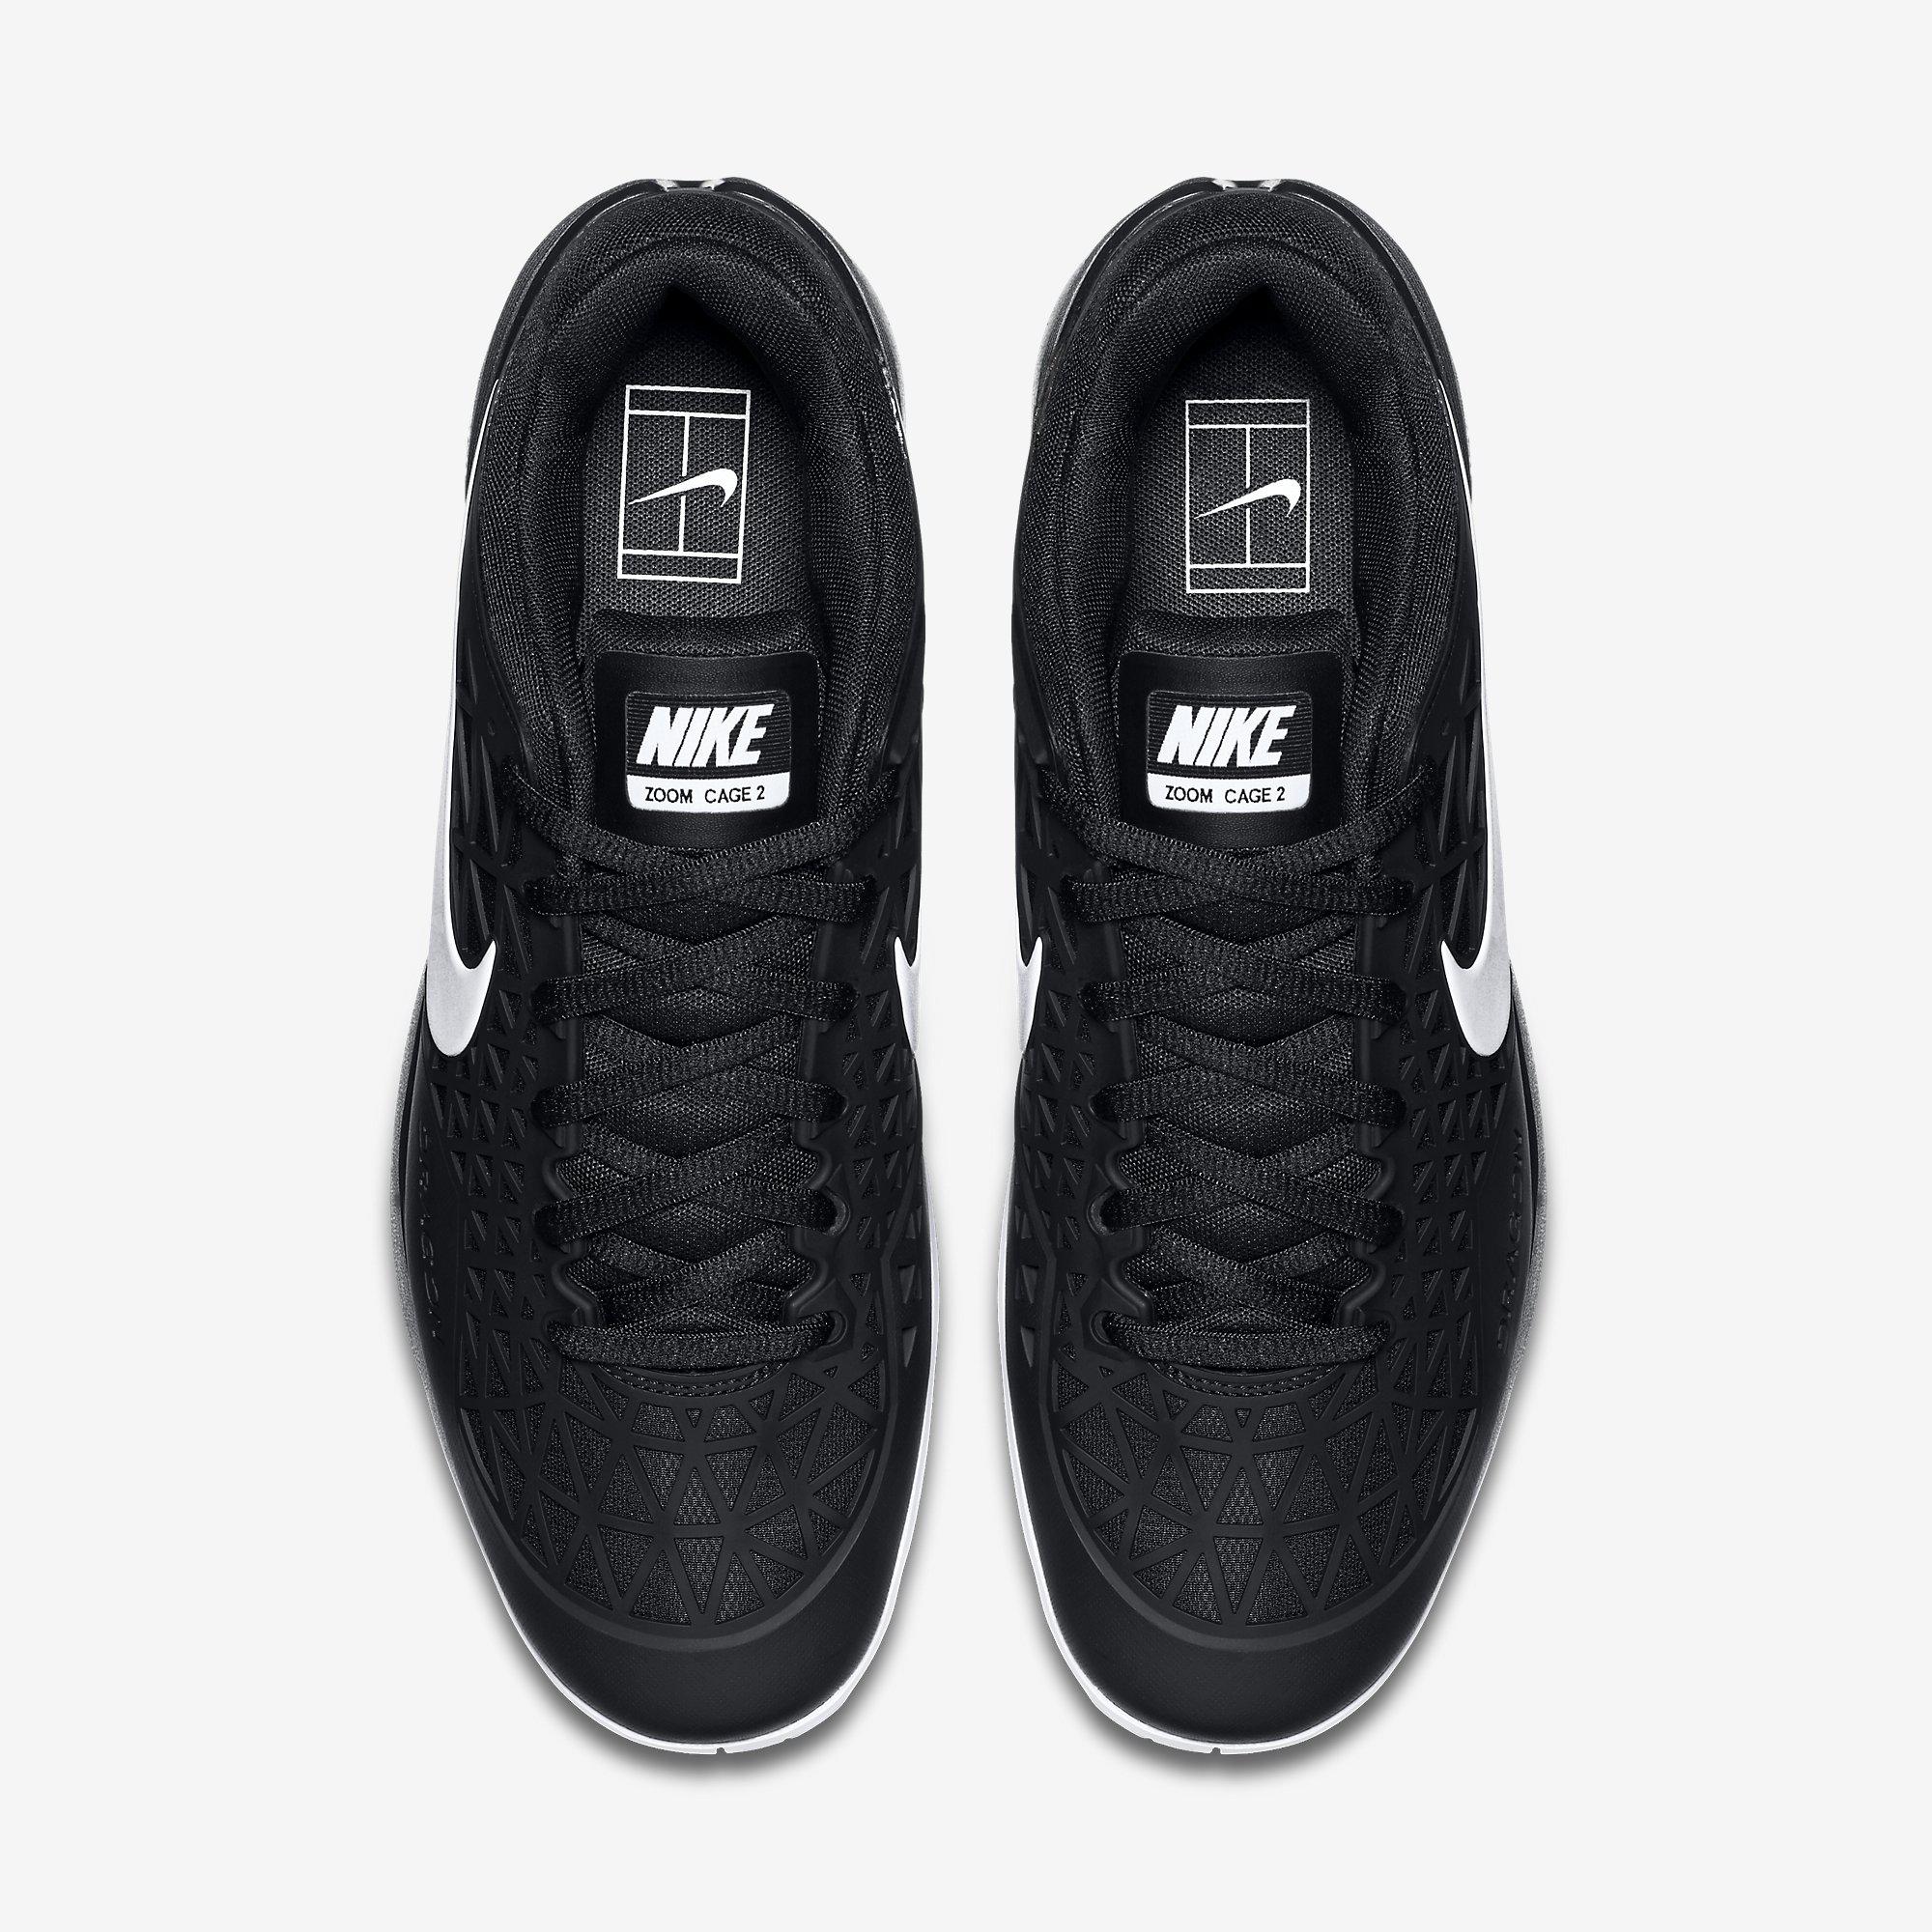 Nike Mens Zoom Cage 2 Tennis Shoes - Black/White - Tennisnuts.com